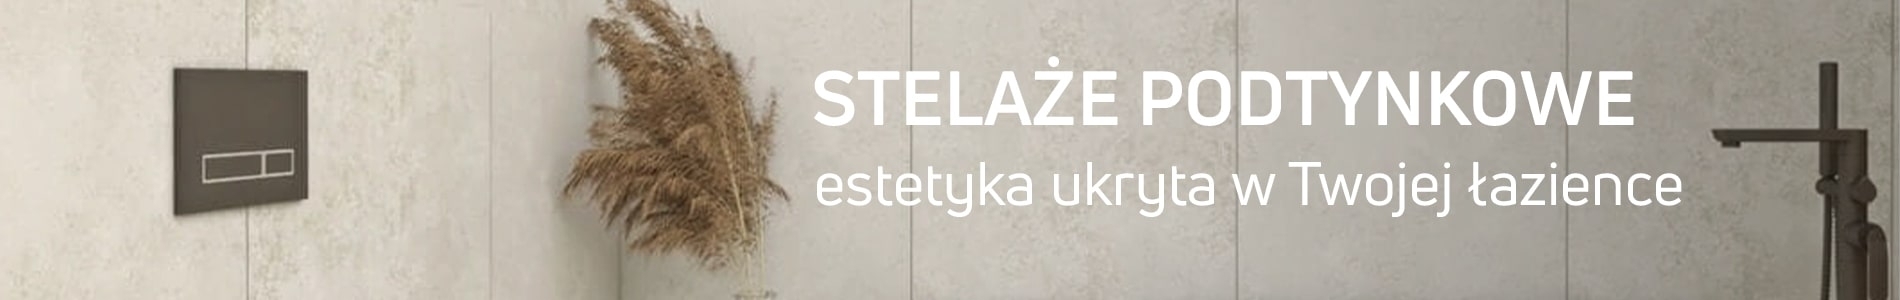 Stelaże podtynkowe w sklepie Massi.pl